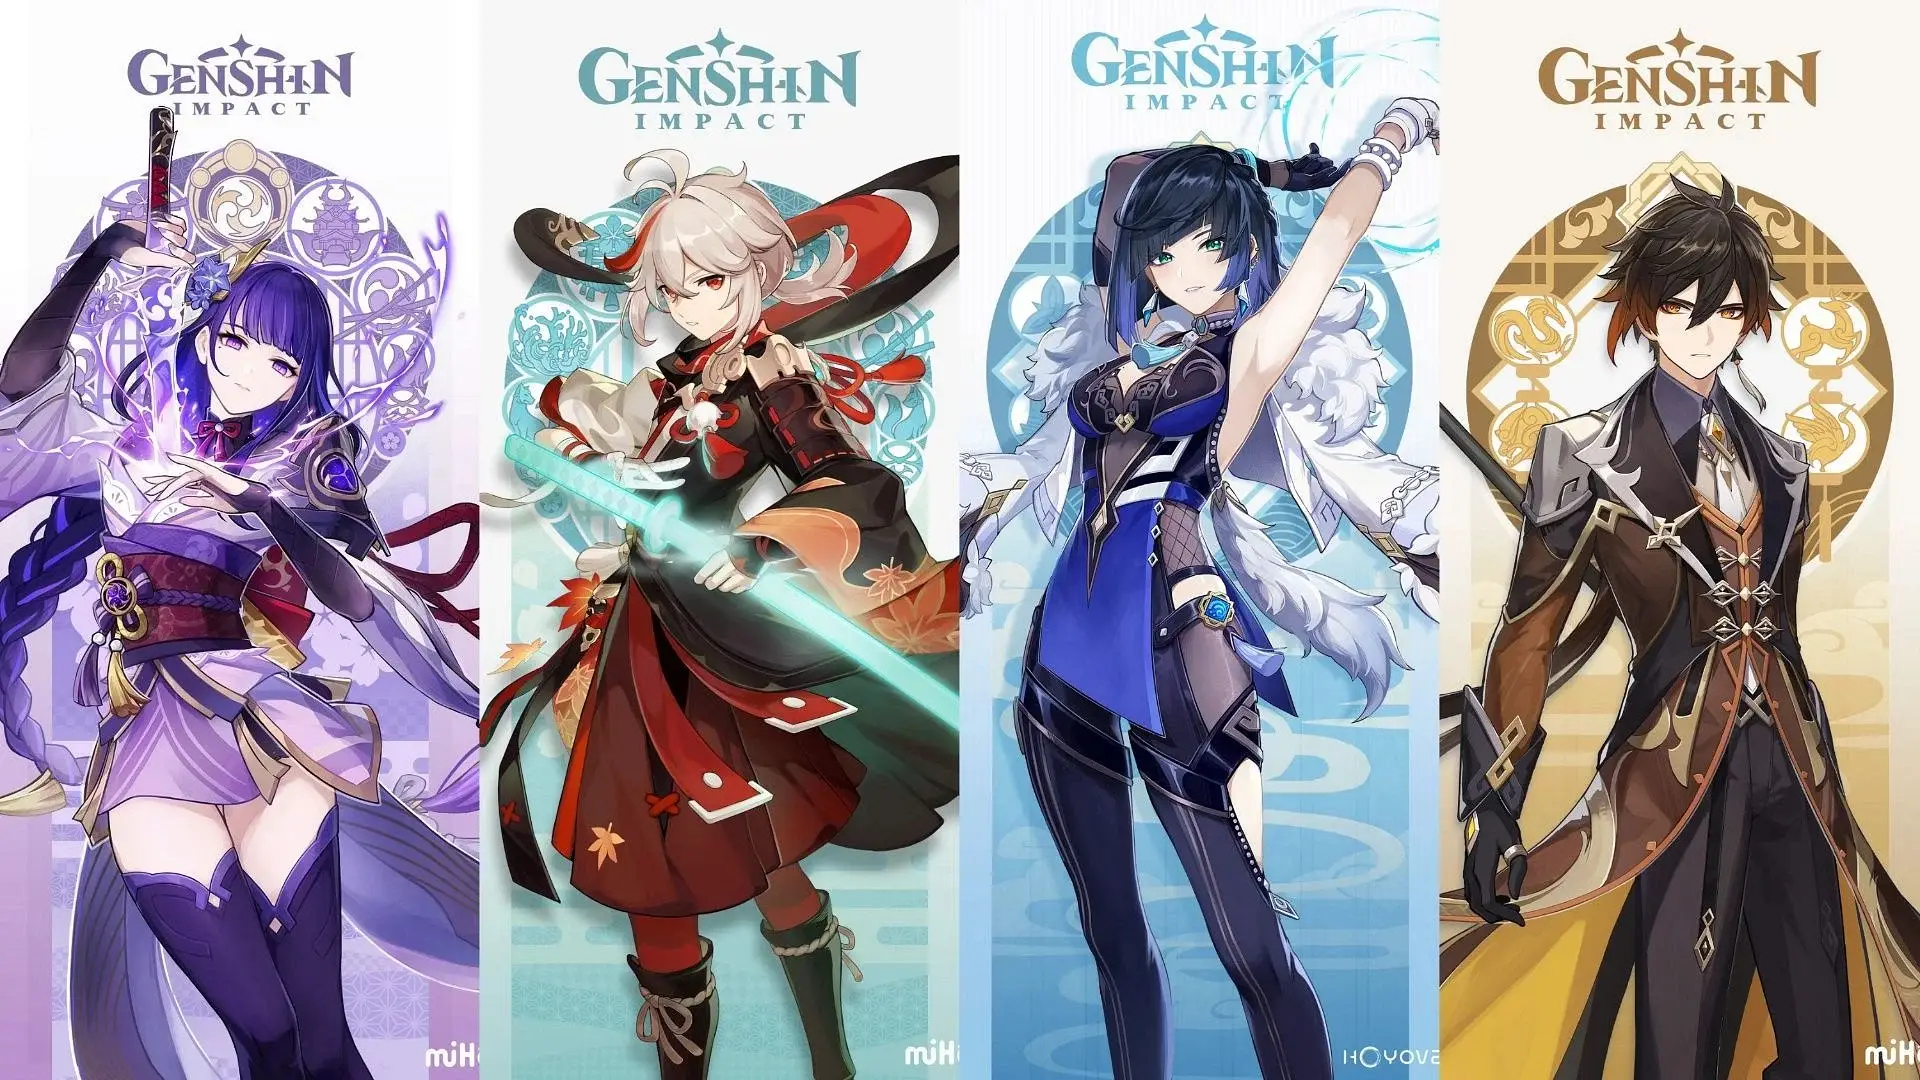 Лучшие персонажи Genshin Impact для игроков F2P (5-звездочные версии)